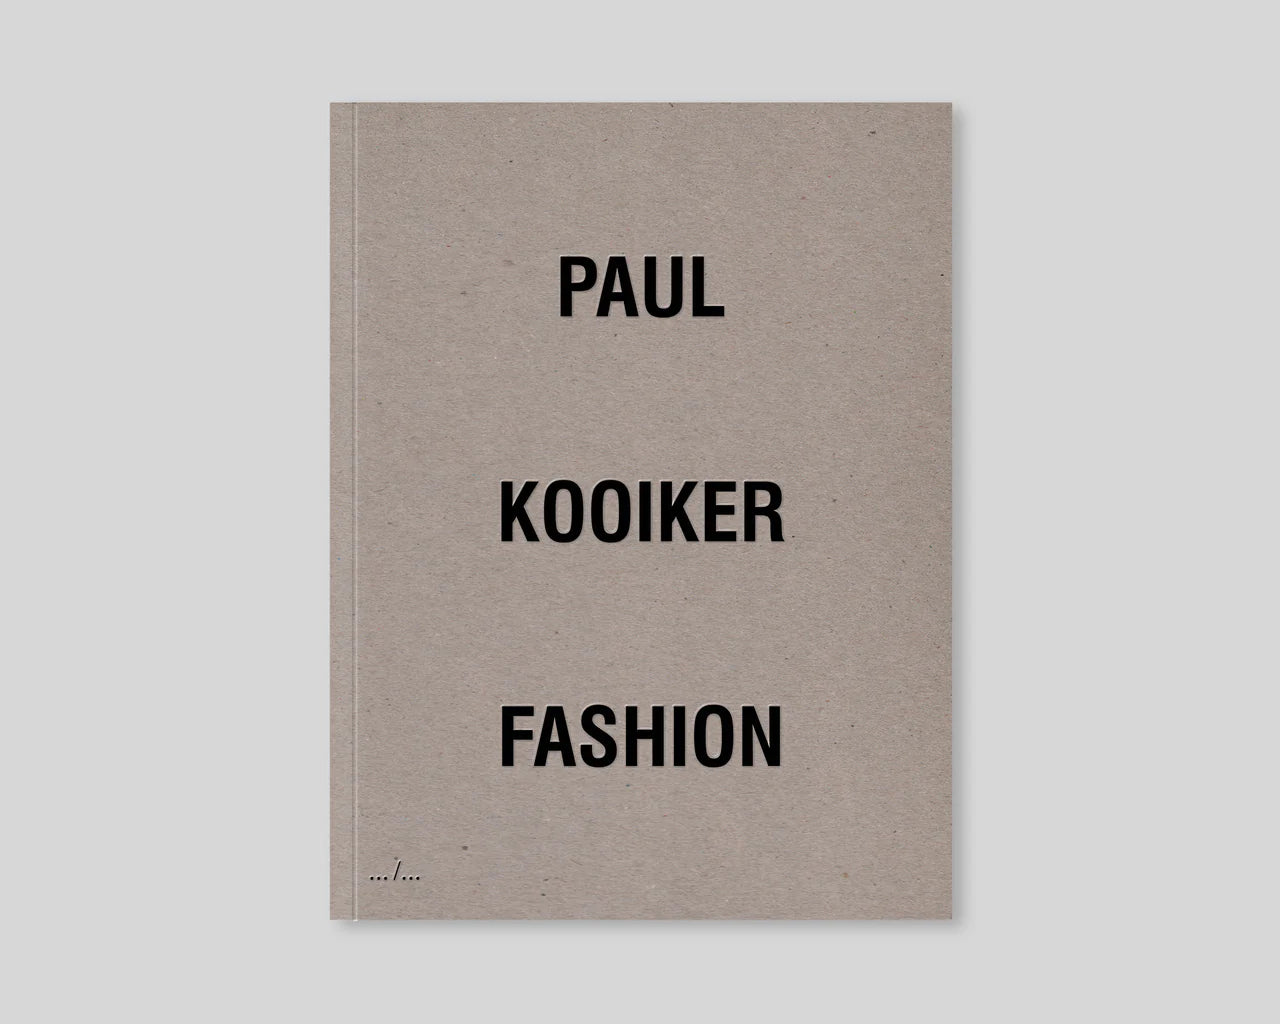 Fashion by Paul Kooiker